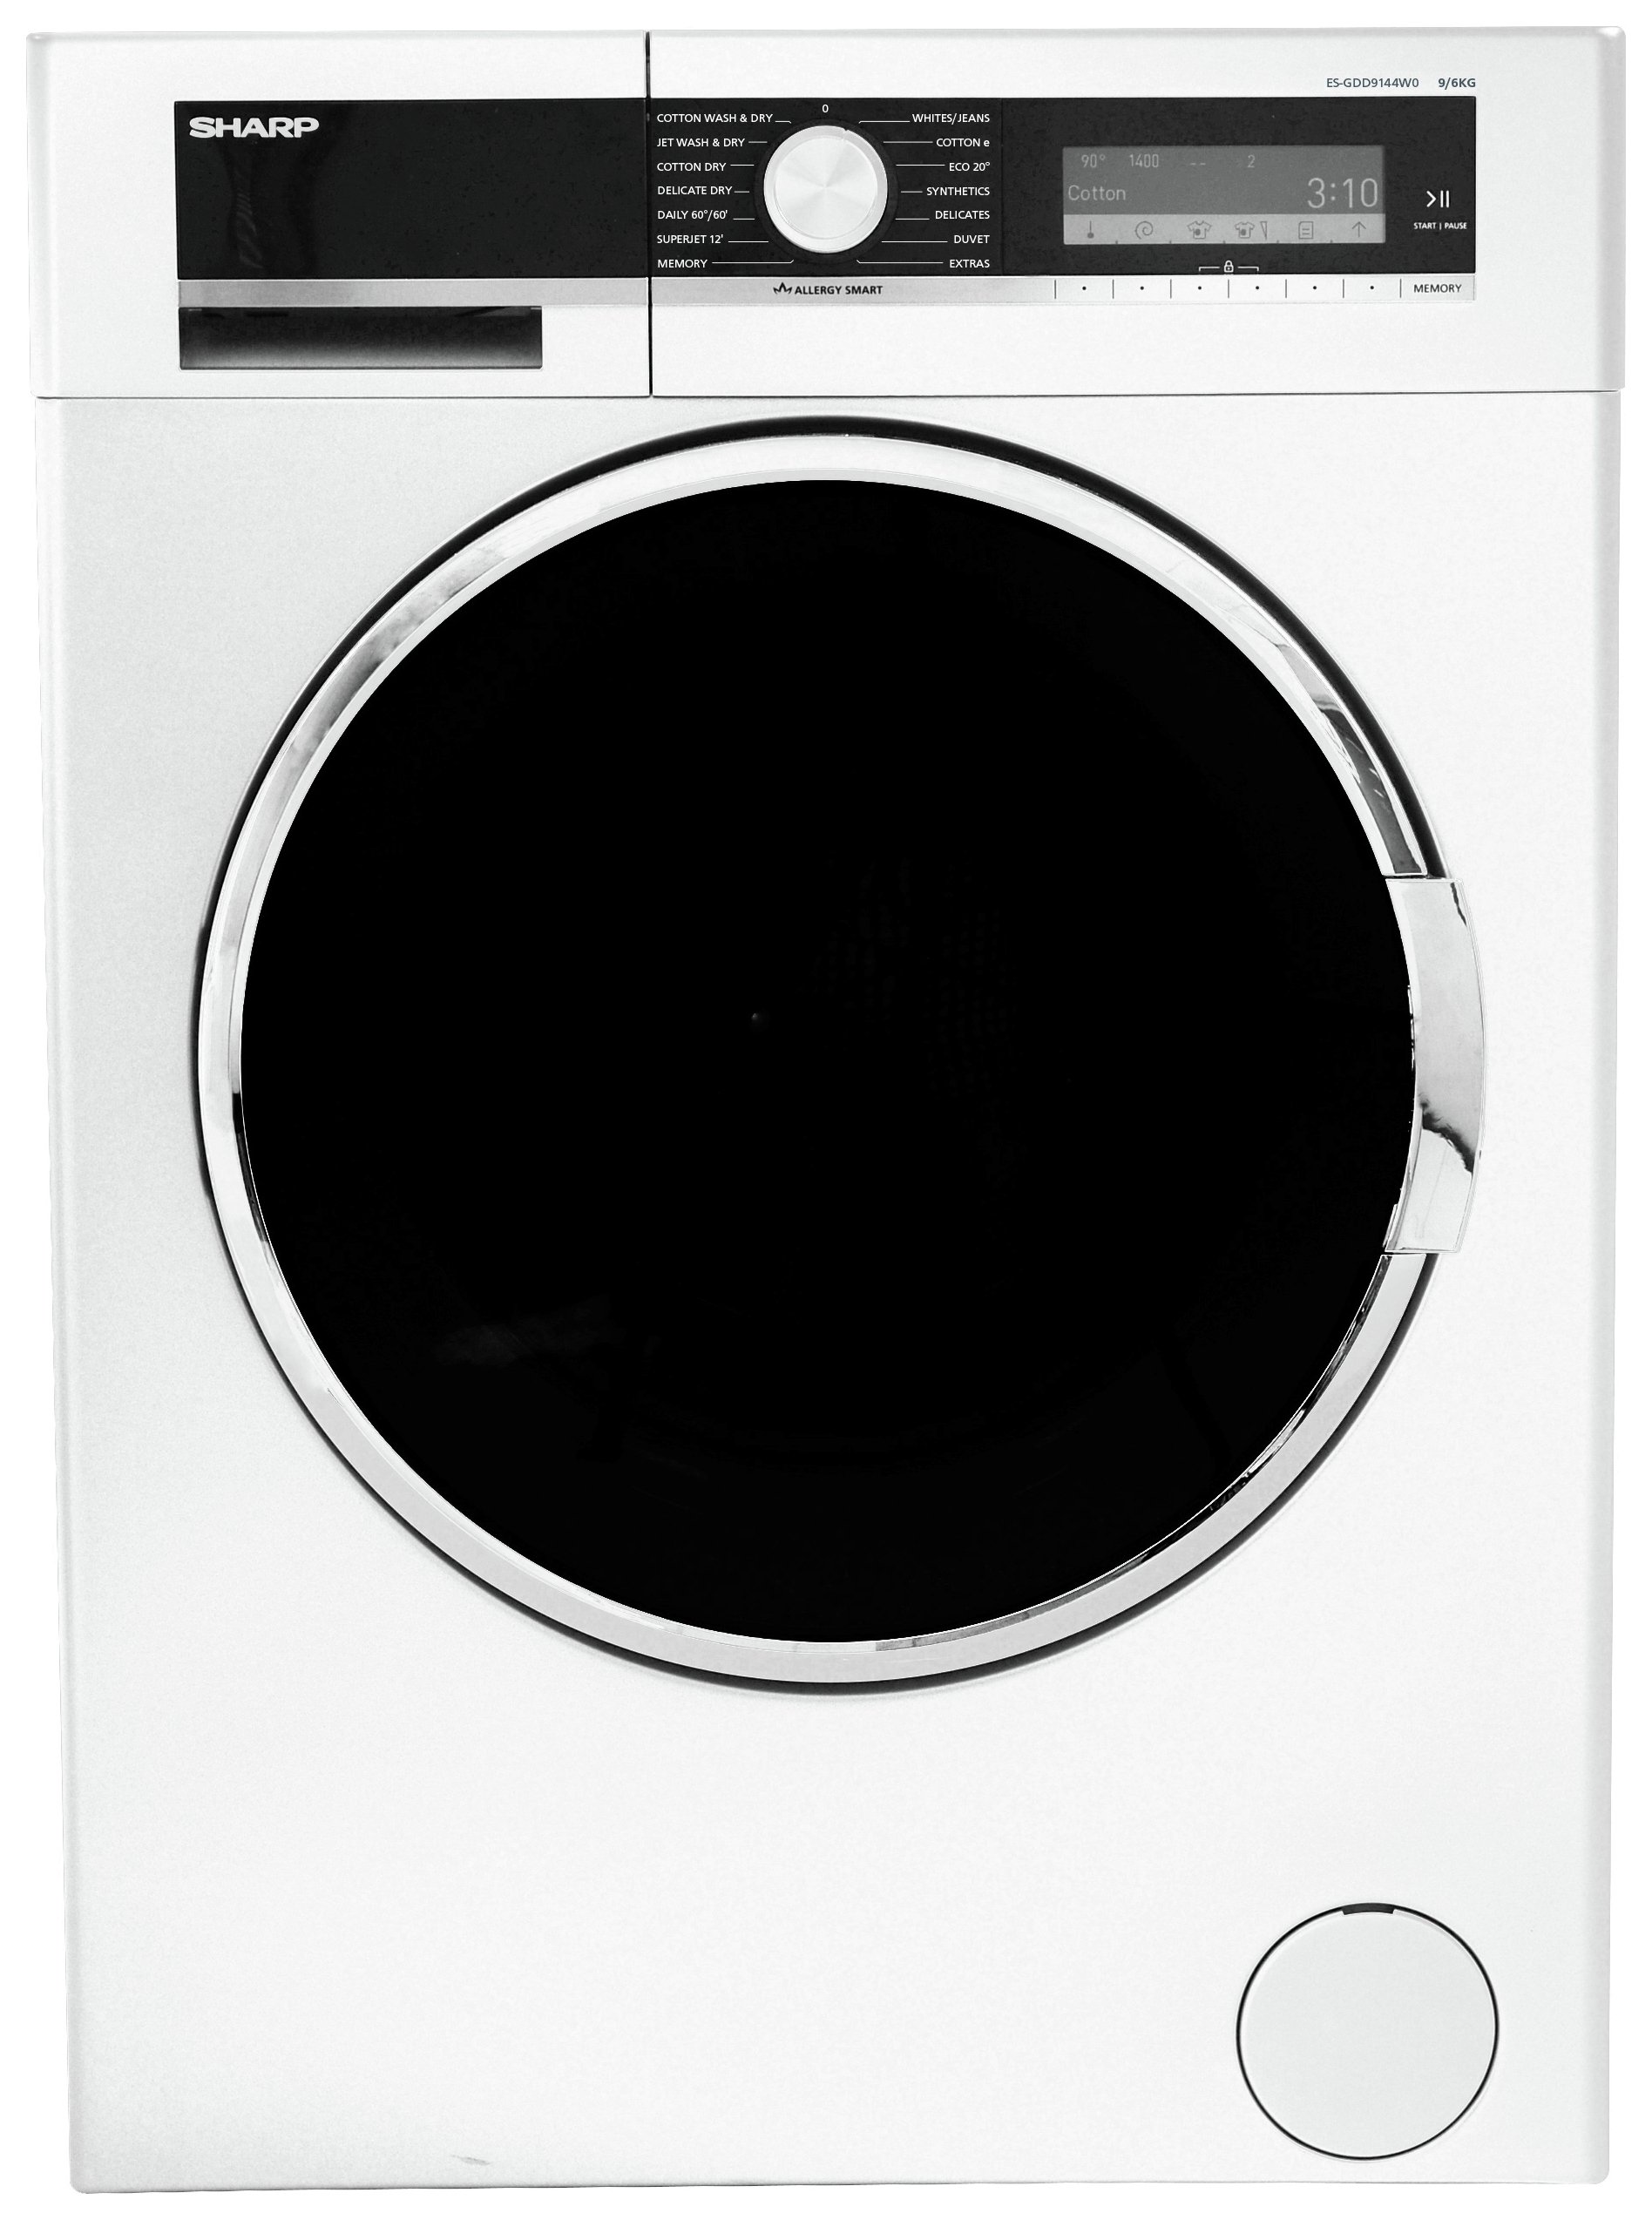 Sharp GDD9144W0 9KG Washer Dryer